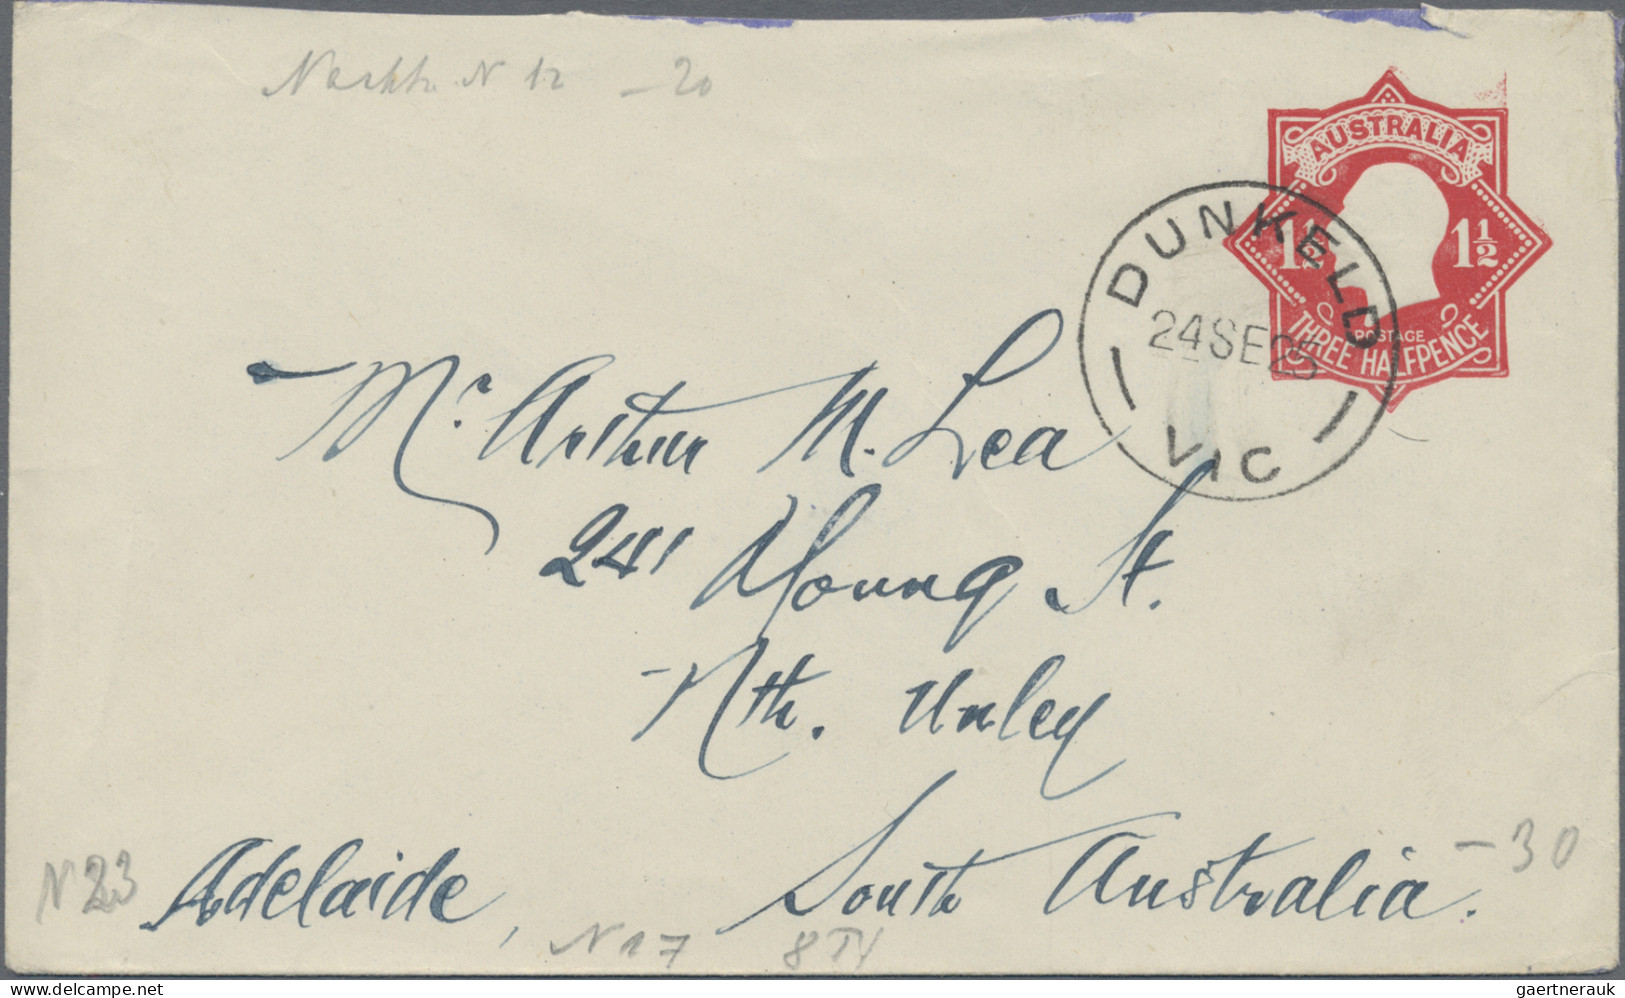 Australia - postal stationery: 1920/28, stationery envelopes KGV star all commer